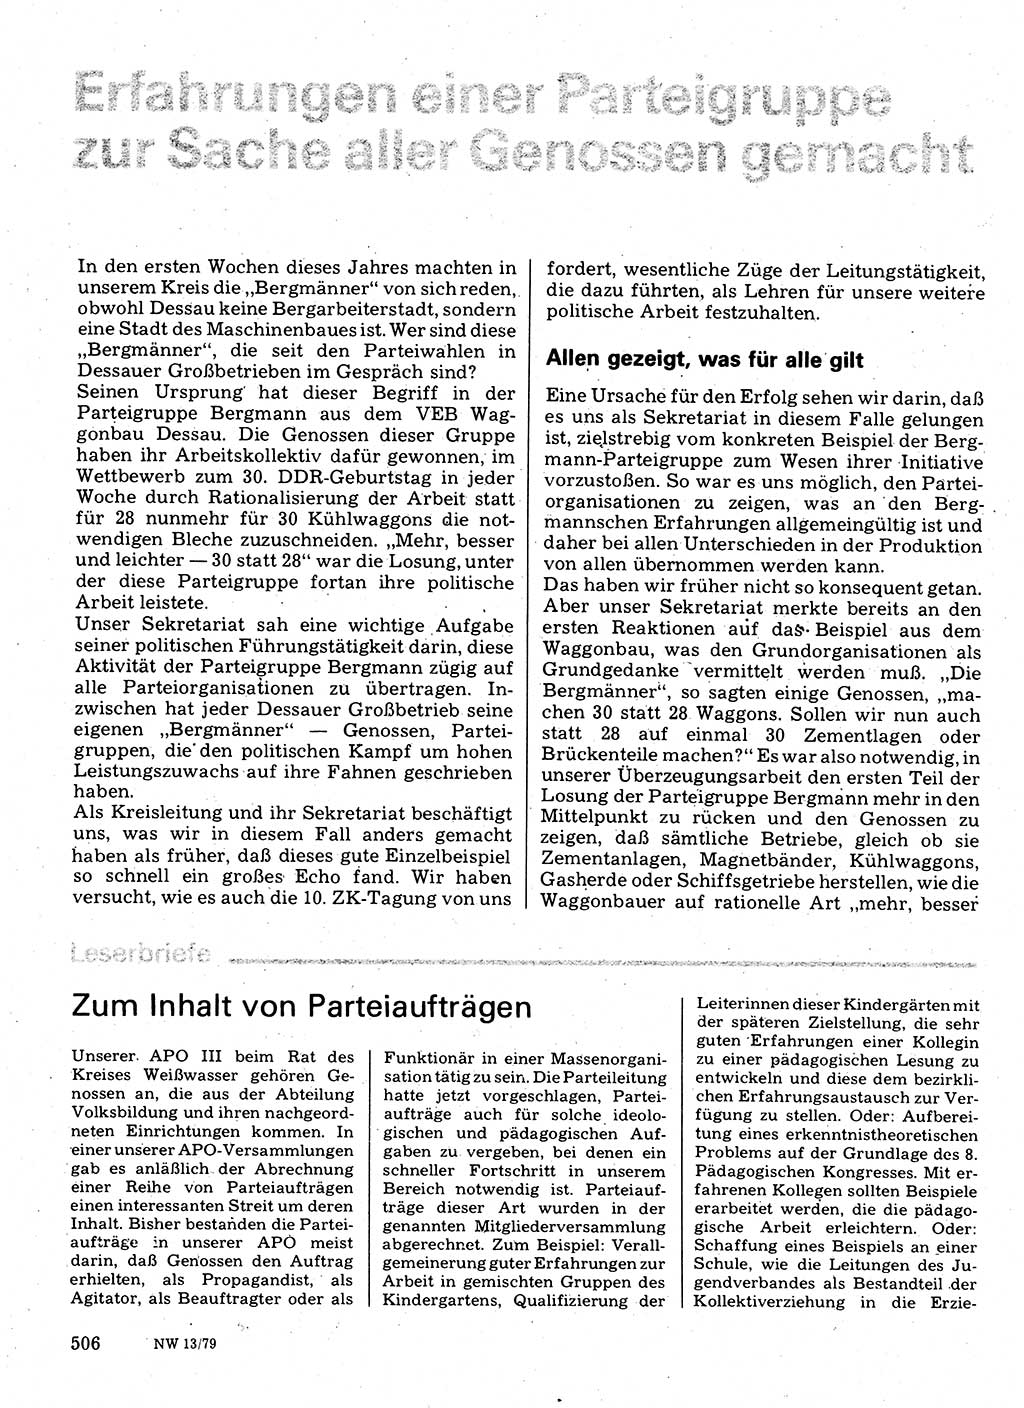 Neuer Weg (NW), Organ des Zentralkomitees (ZK) der SED (Sozialistische Einheitspartei Deutschlands) für Fragen des Parteilebens, 34. Jahrgang [Deutsche Demokratische Republik (DDR)] 1979, Seite 506 (NW ZK SED DDR 1979, S. 506)